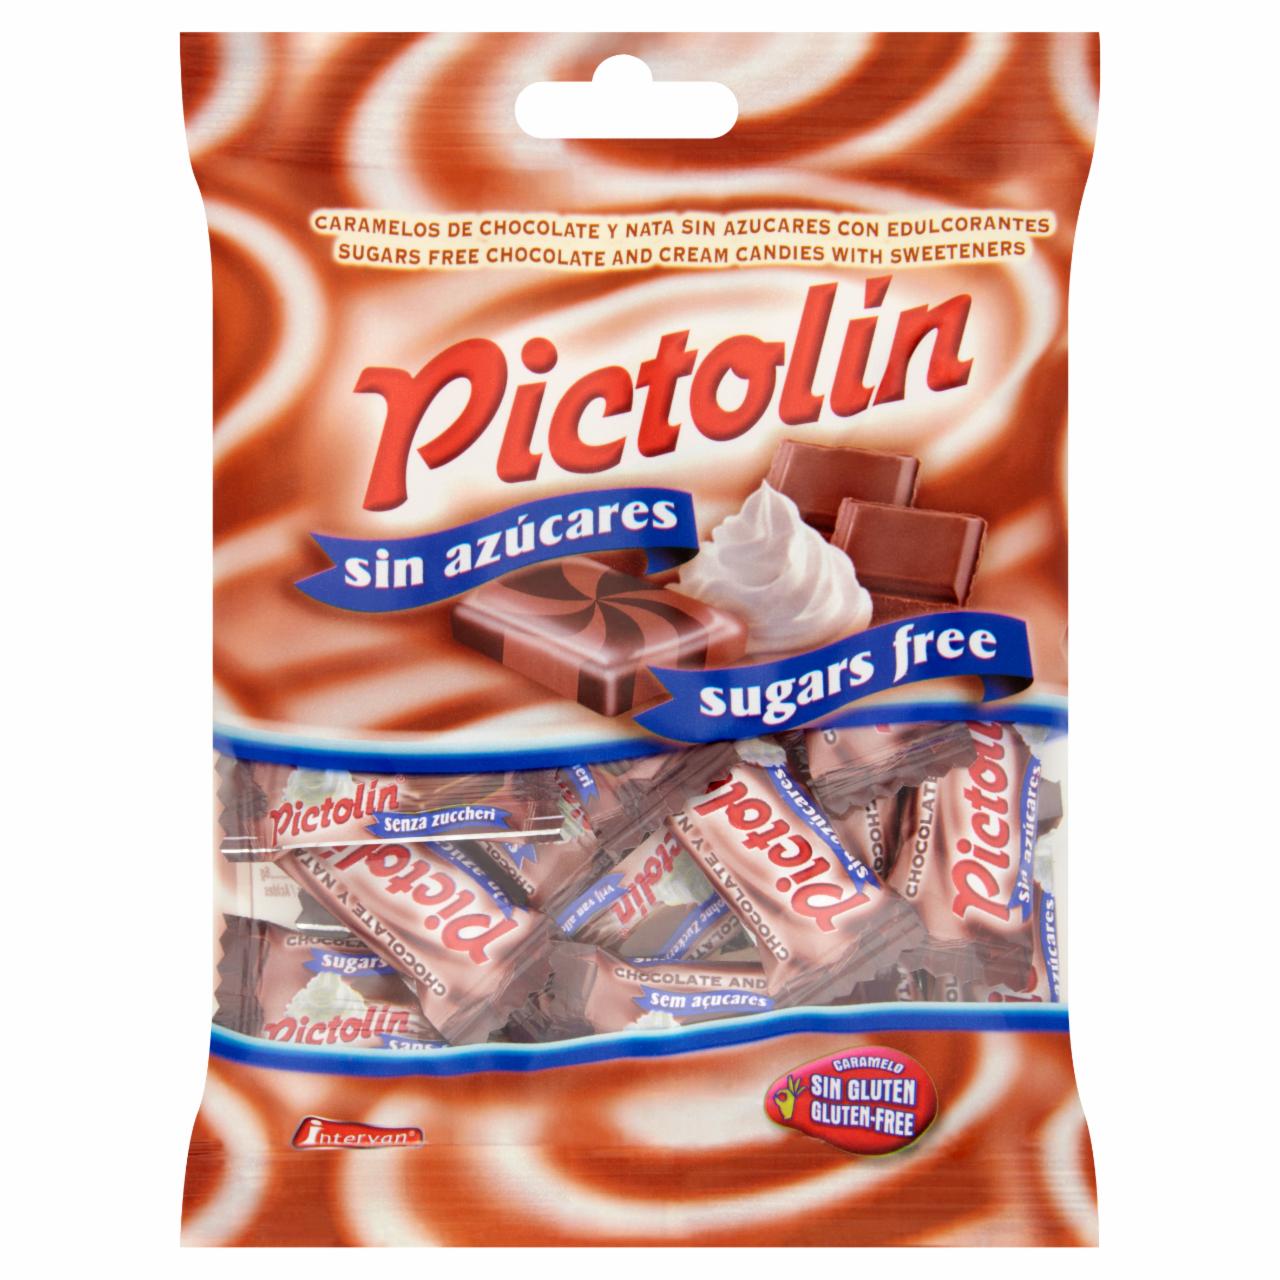 Képek - Pictolin cukormentes csokoládés ízesítésű, tejszínes cukorka édesítőszerrel 65 g